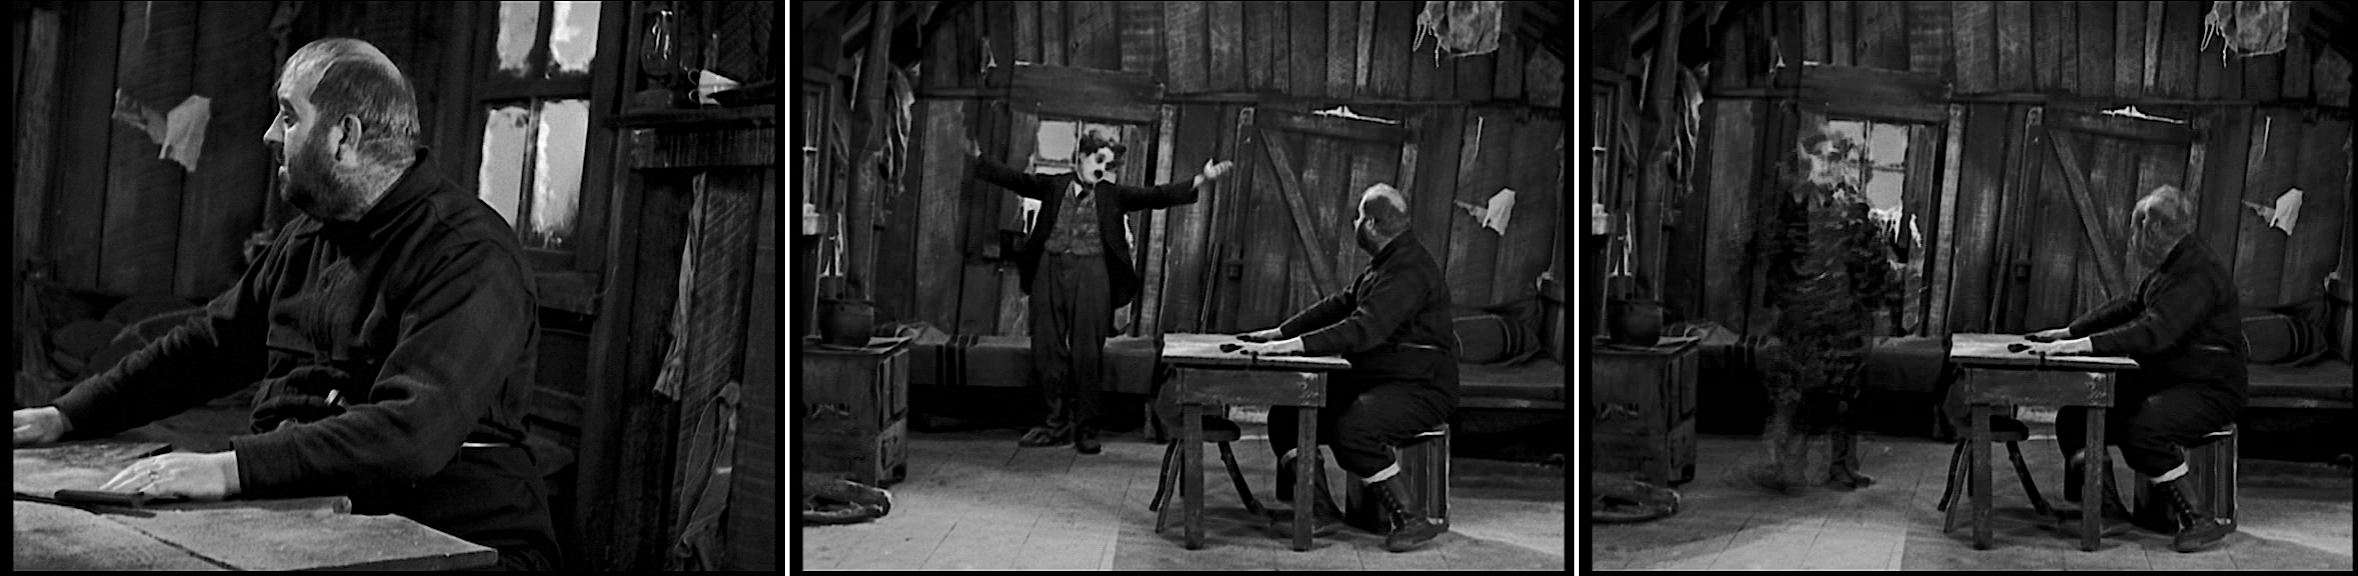 La Ruée vers l’or (The Gold Rush, 1925) de Charles Chaplin, édité en vidéo par MK2/Potemkine.